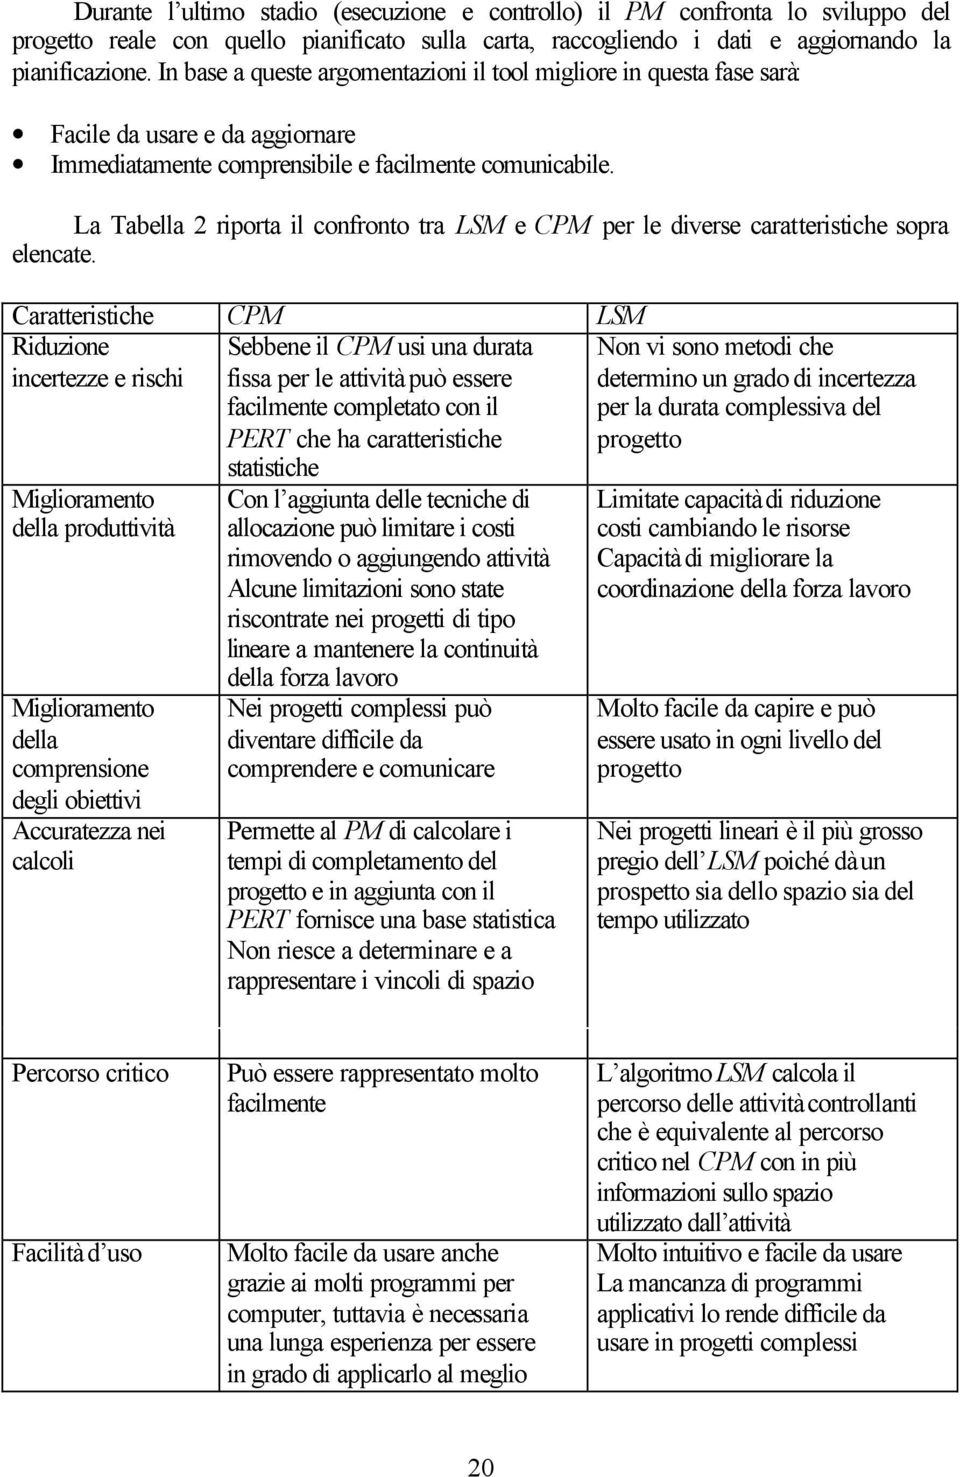 La Tabella 2 riporta il confronto tra LSM e CPM per le diverse caratteristiche sopra elencate.